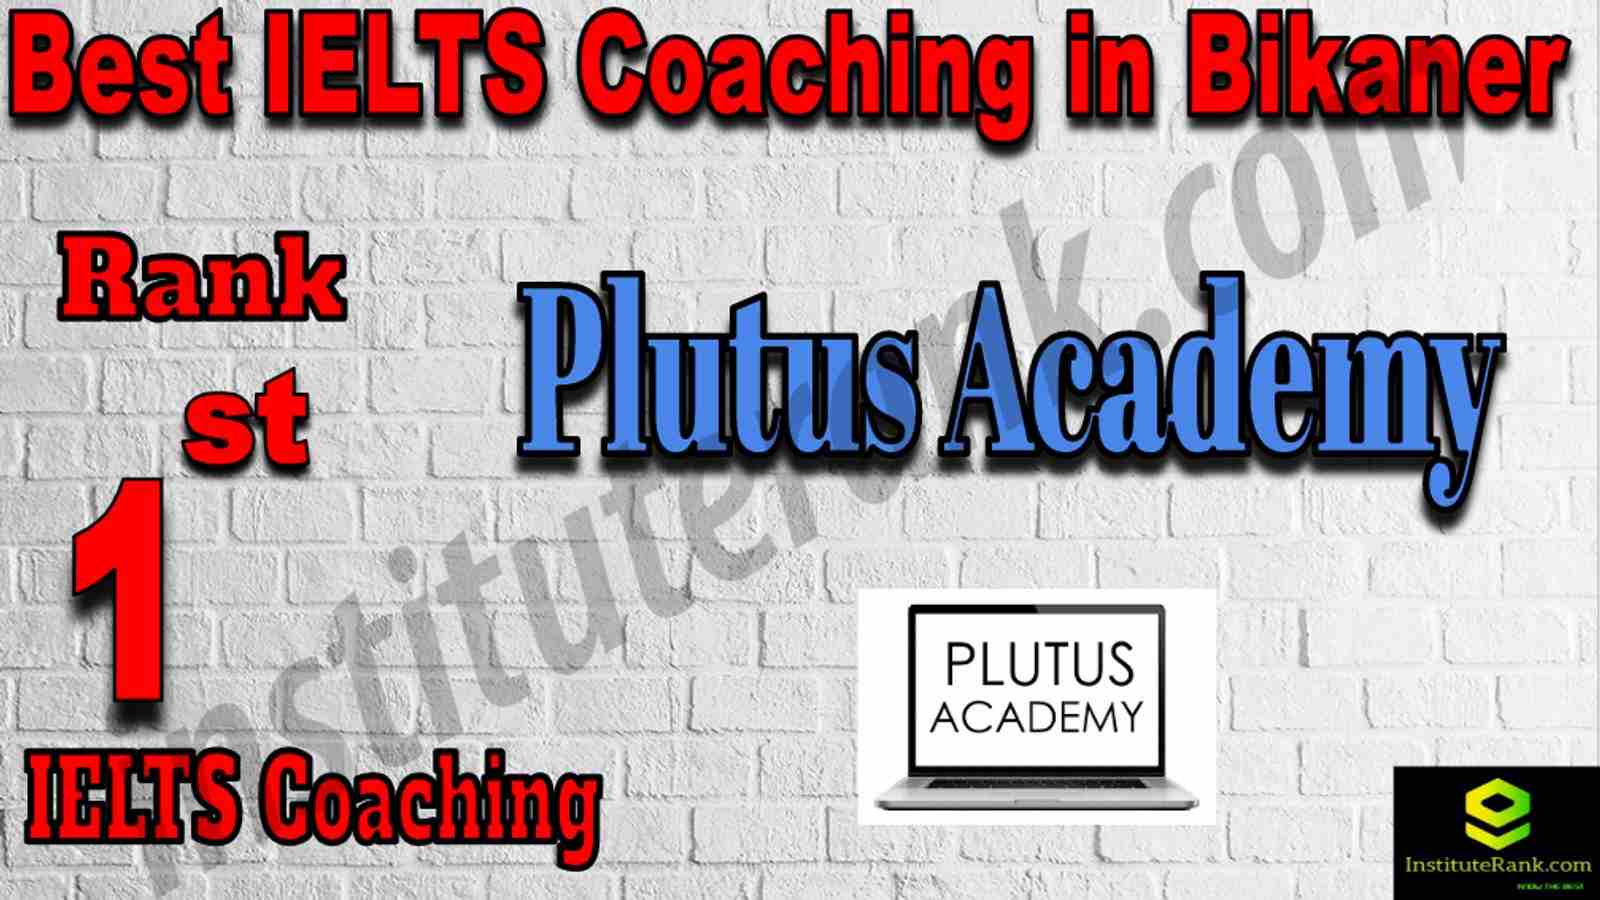 1st Best IELTS Coaching in Bikaner